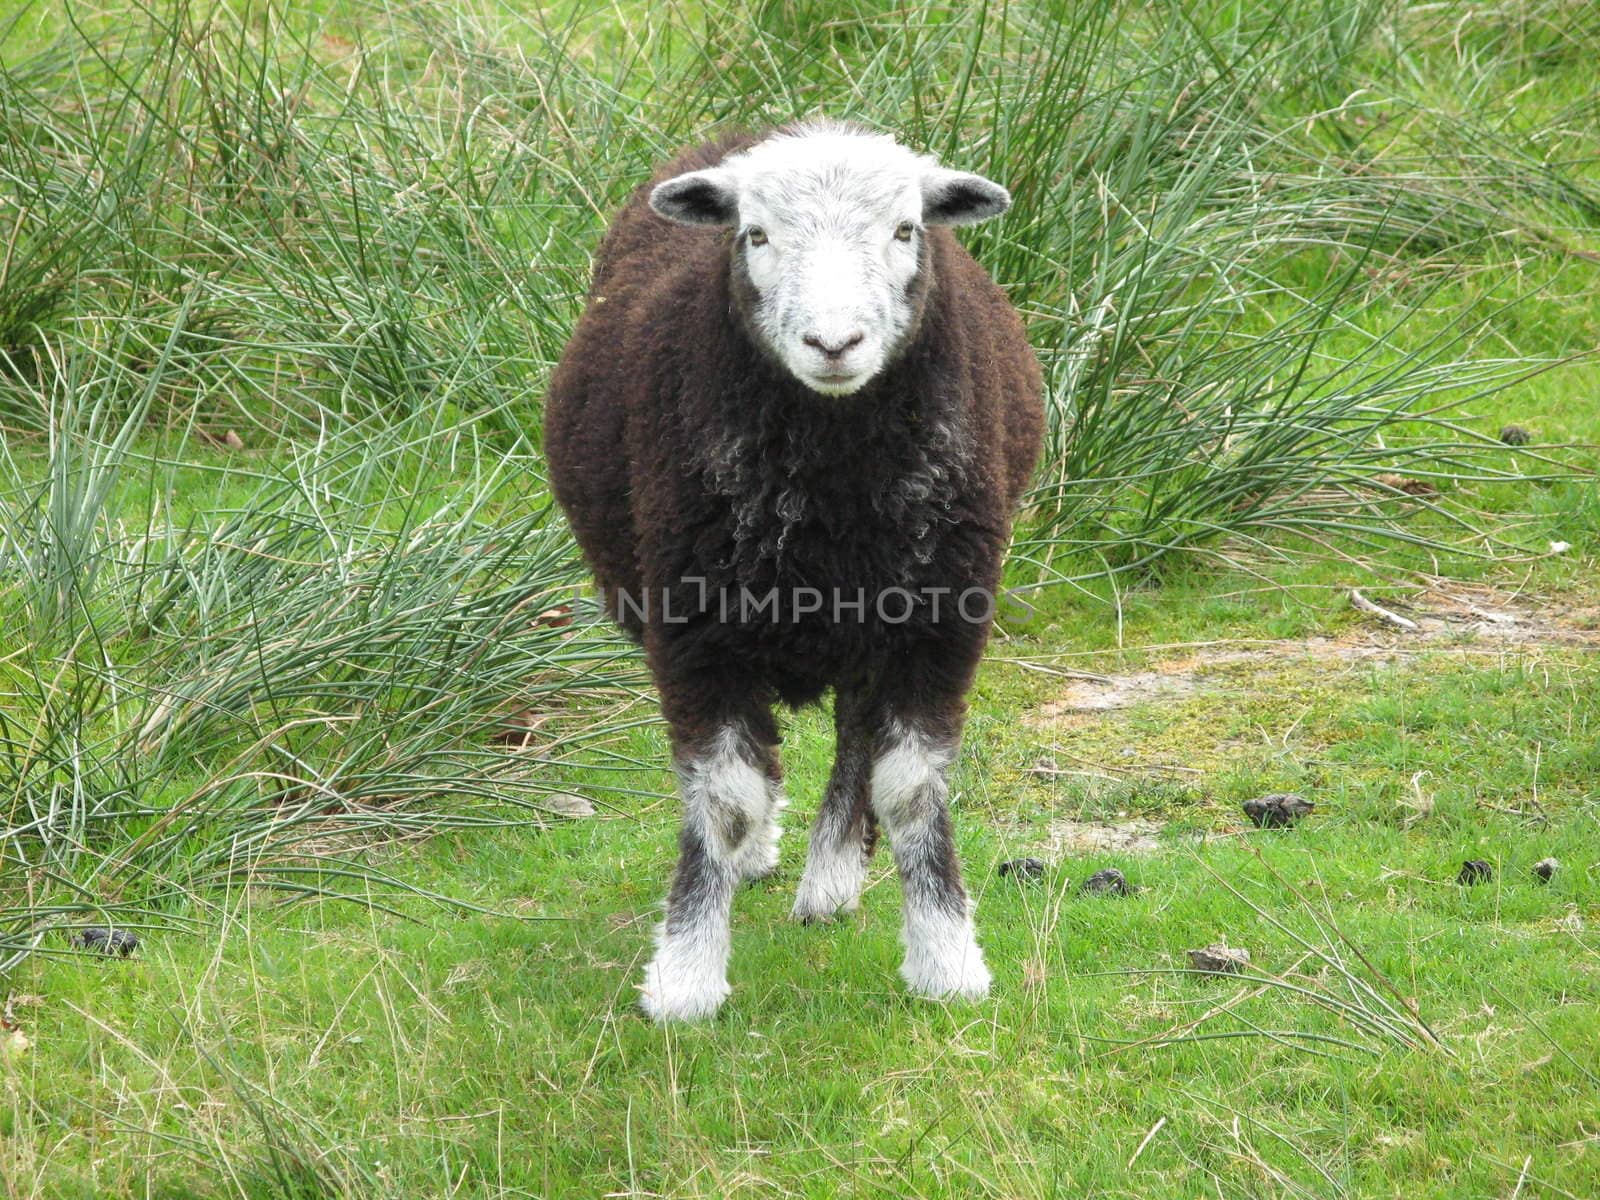 a sheep staring straight at the camera